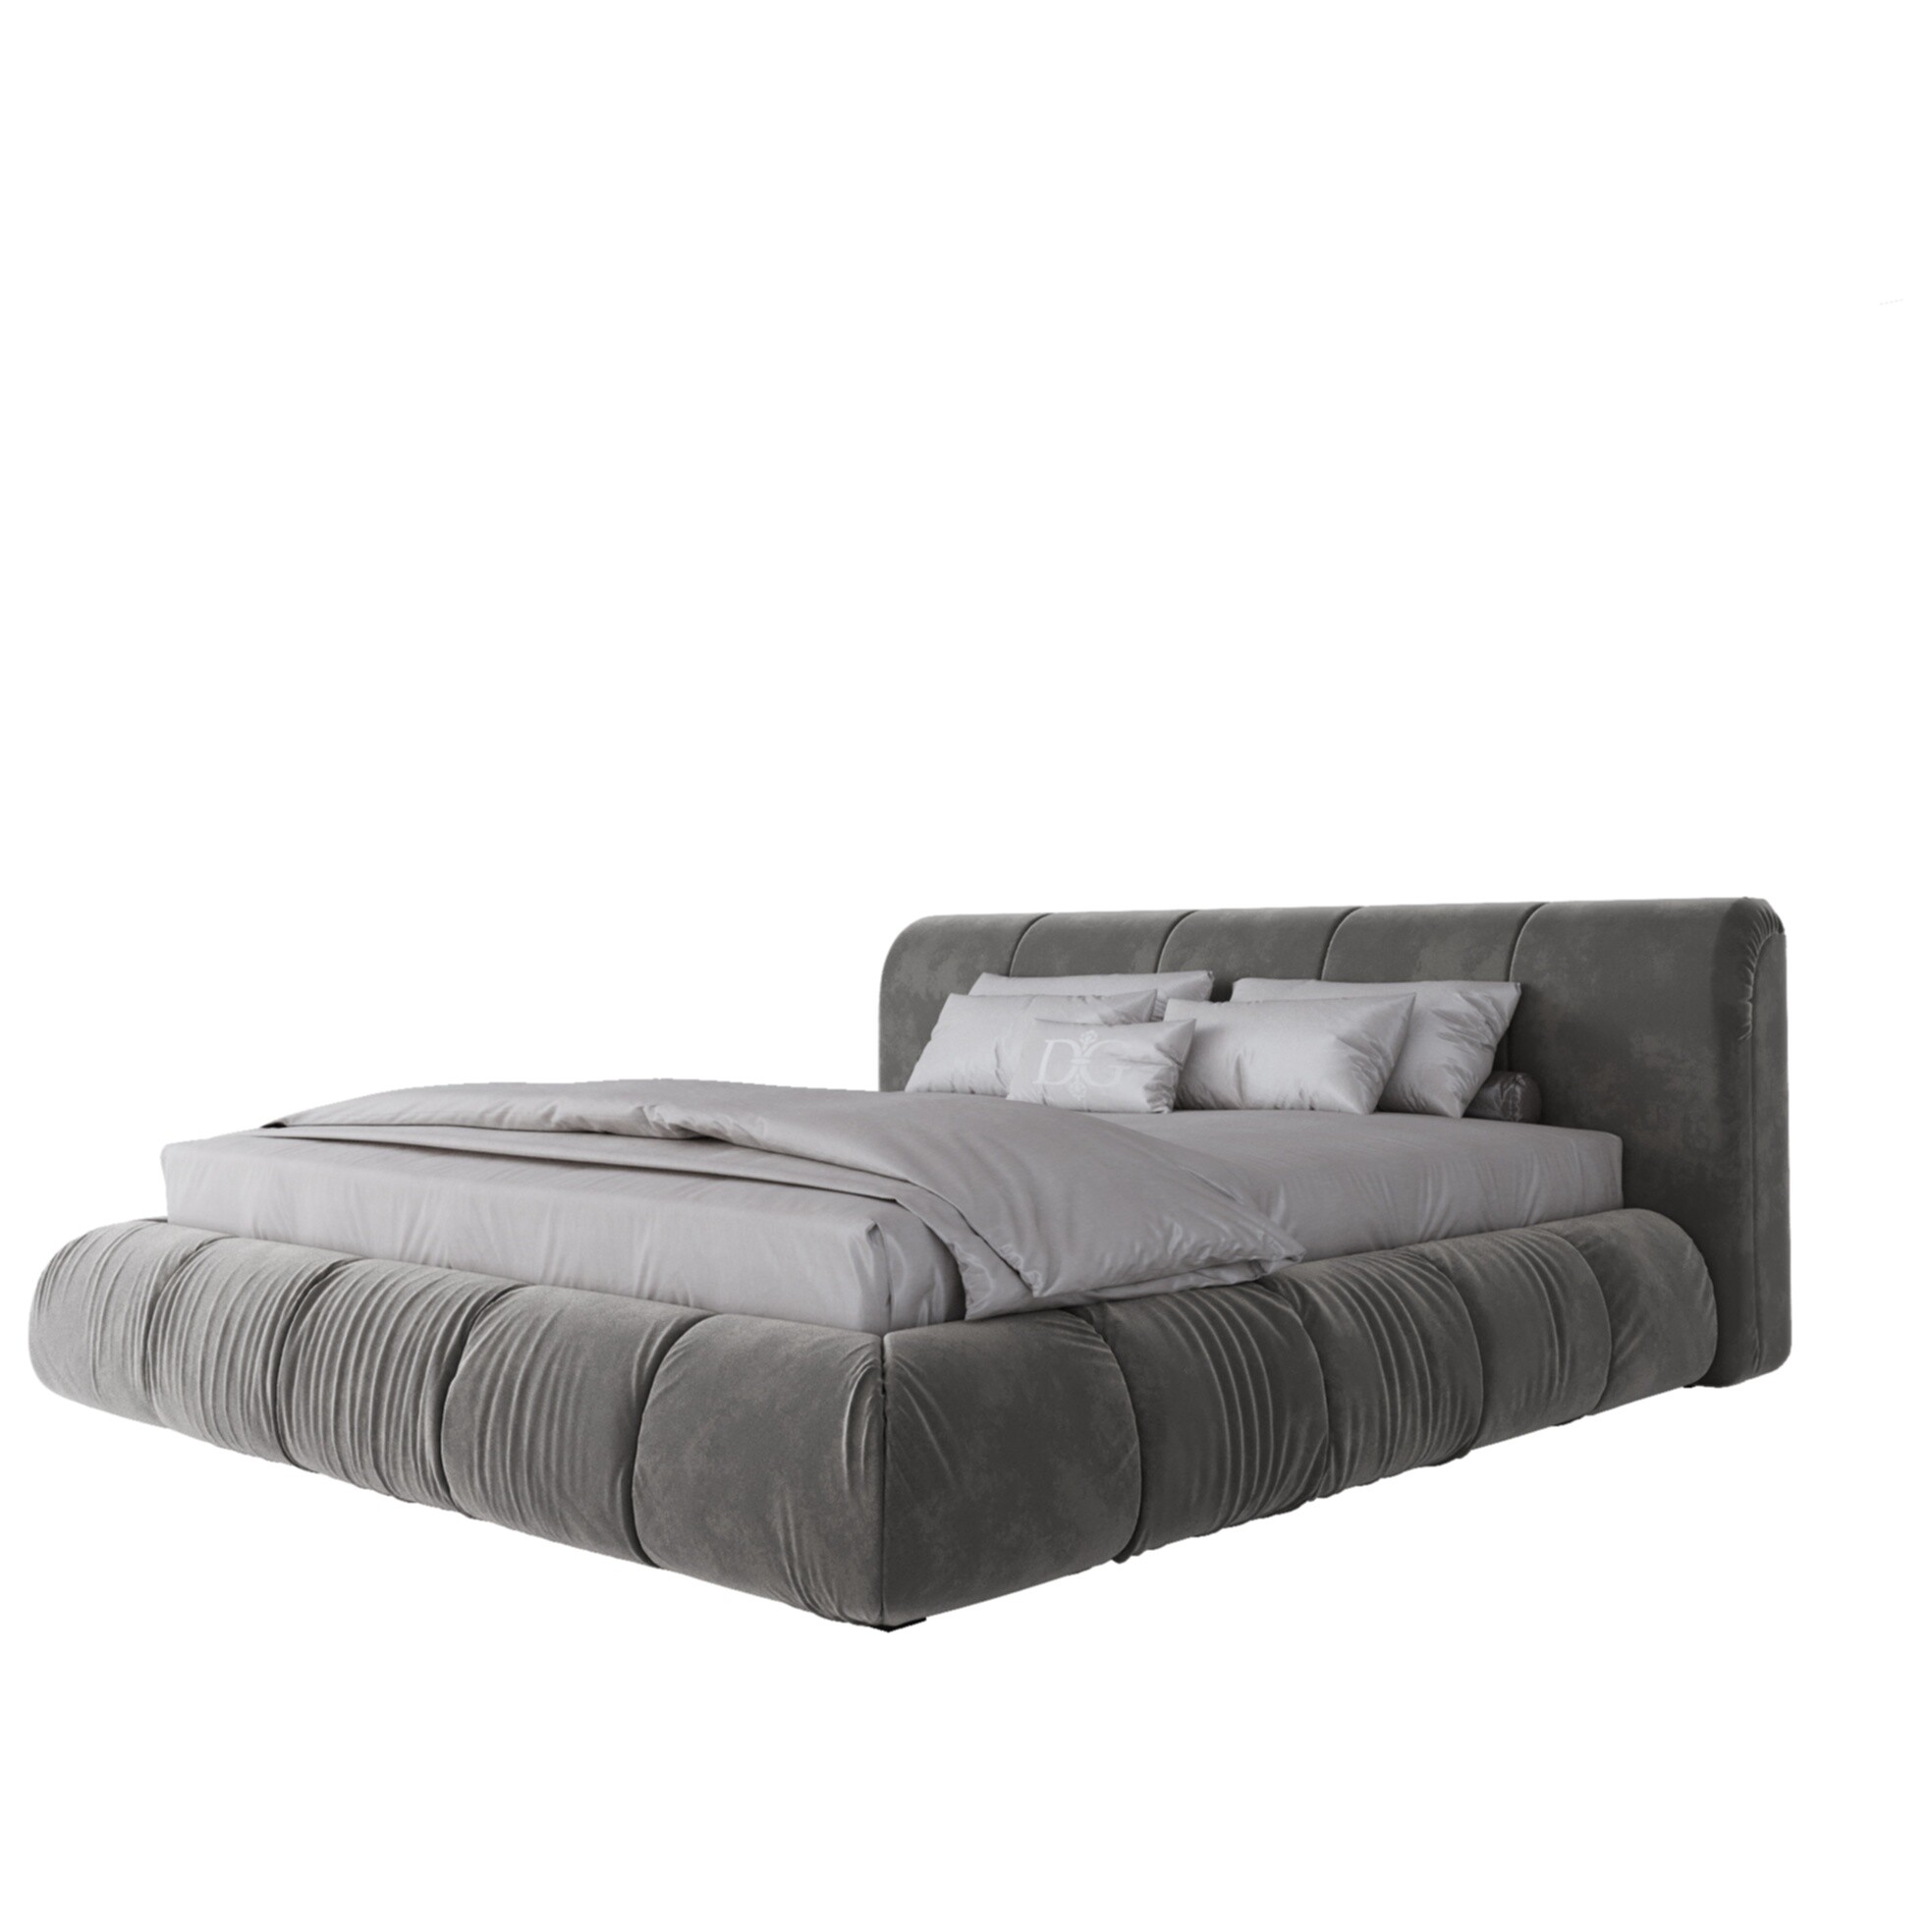 Кровать двуспальная с мягким изголовьем 180х200 см светло-серая Mobili